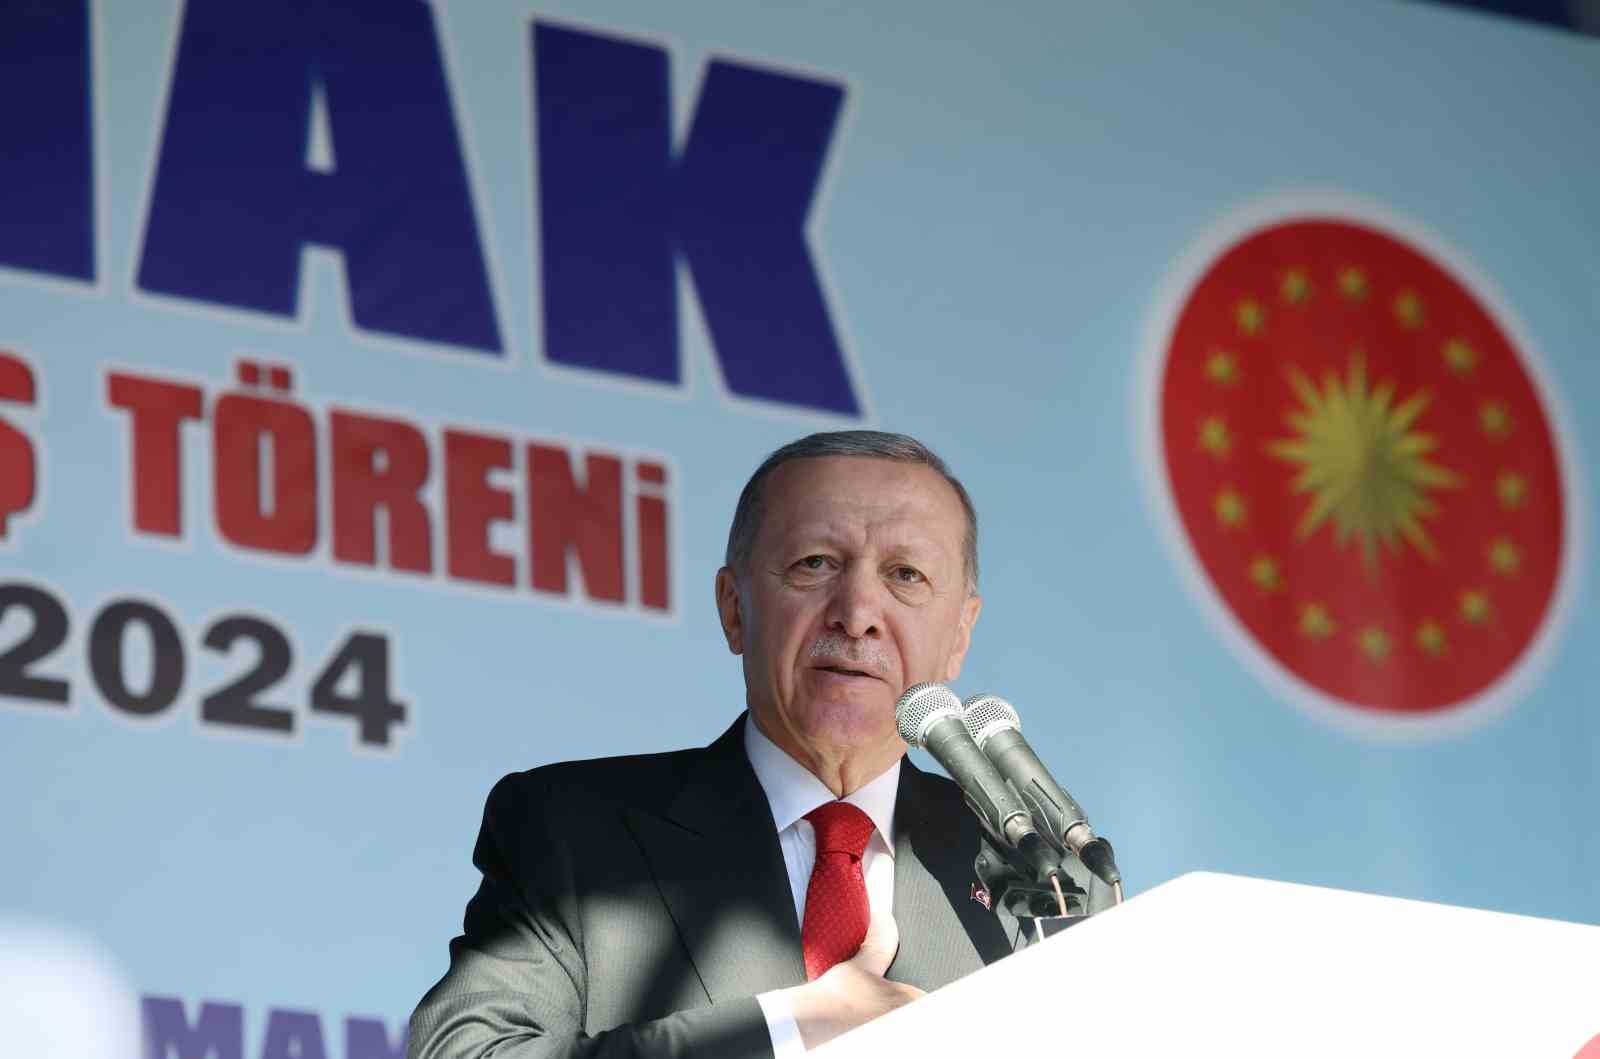 Cumhurbaşkanı Erdoğan: "14-28 Mayıs seçimlerinde olduğu gibi 31 Mart öncesinde de siyasi rekabeti siyasi husumete dönüştürmeye çalışanlar var"
